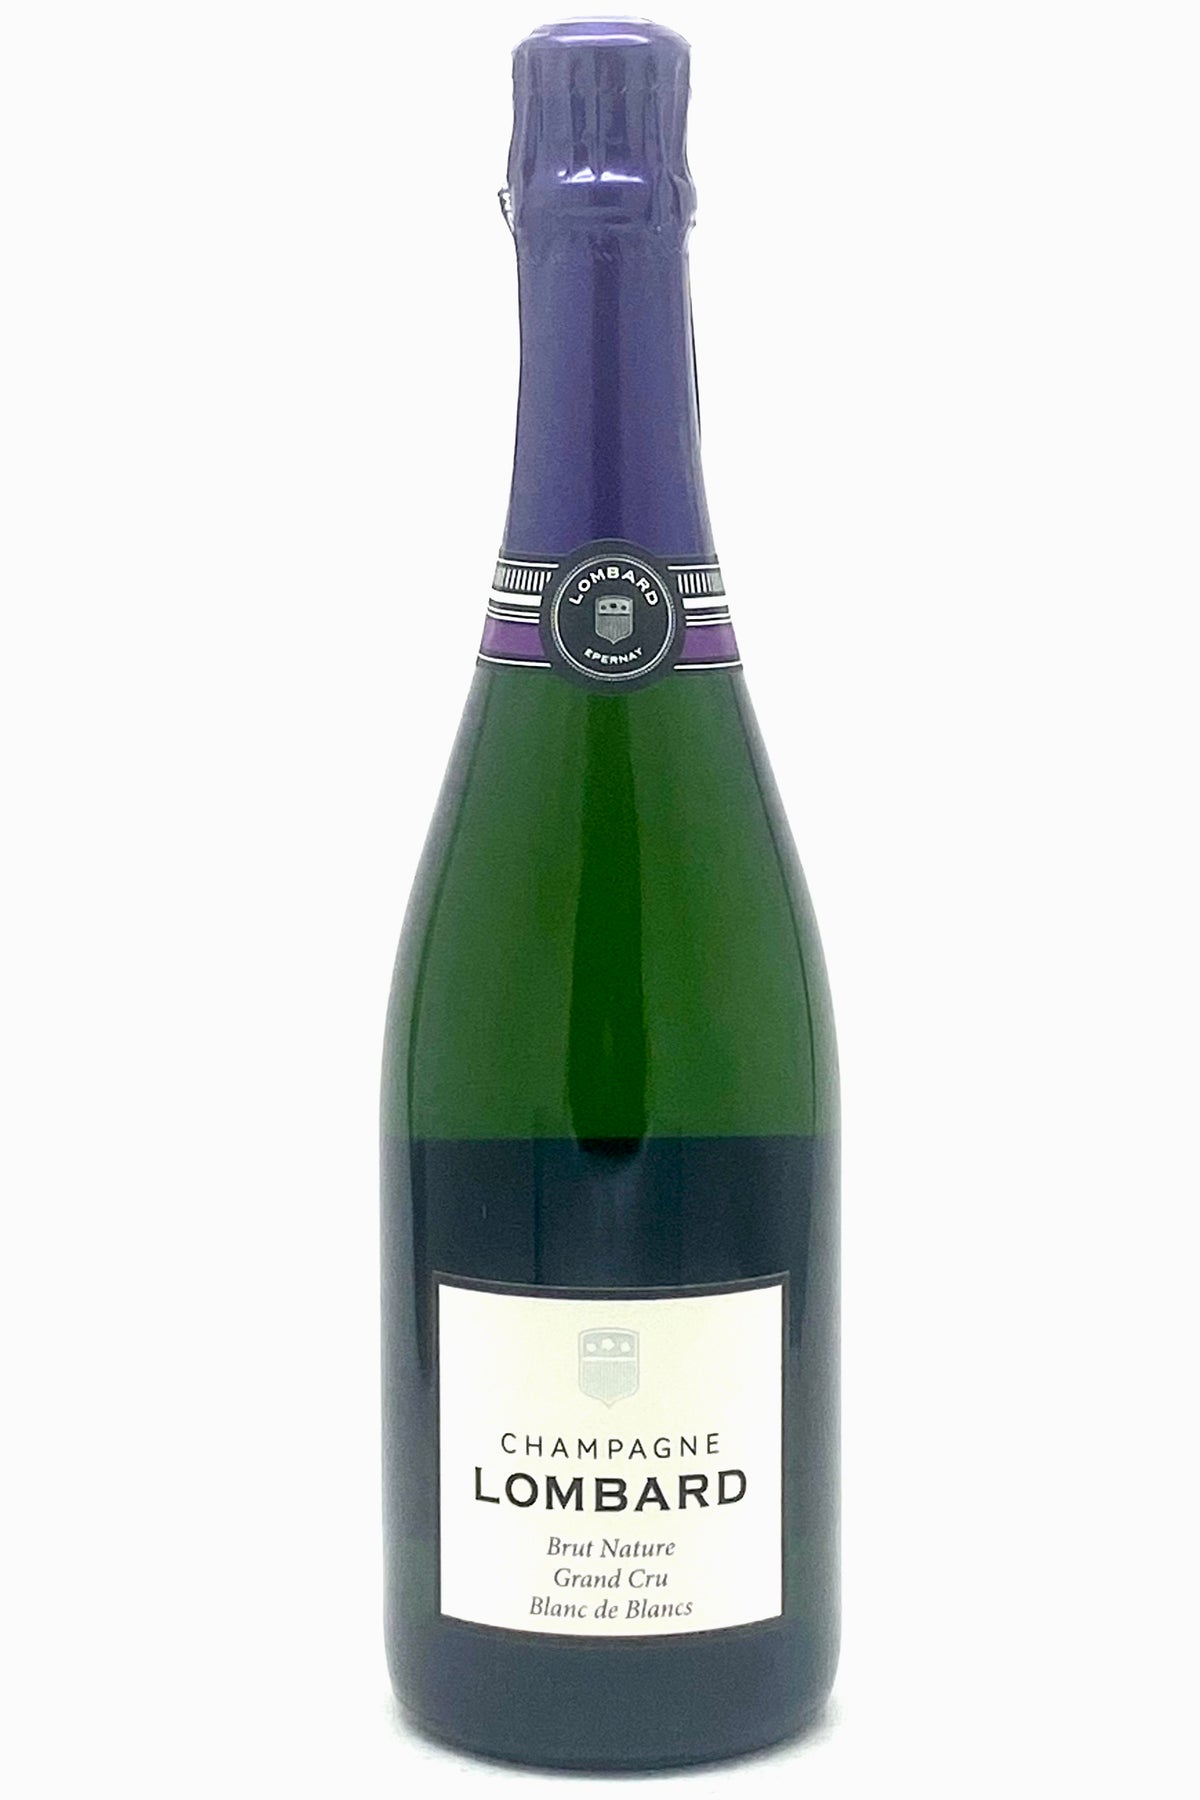 Lombard Blanc de Blancs Champagne Brut Nature Grand Cru